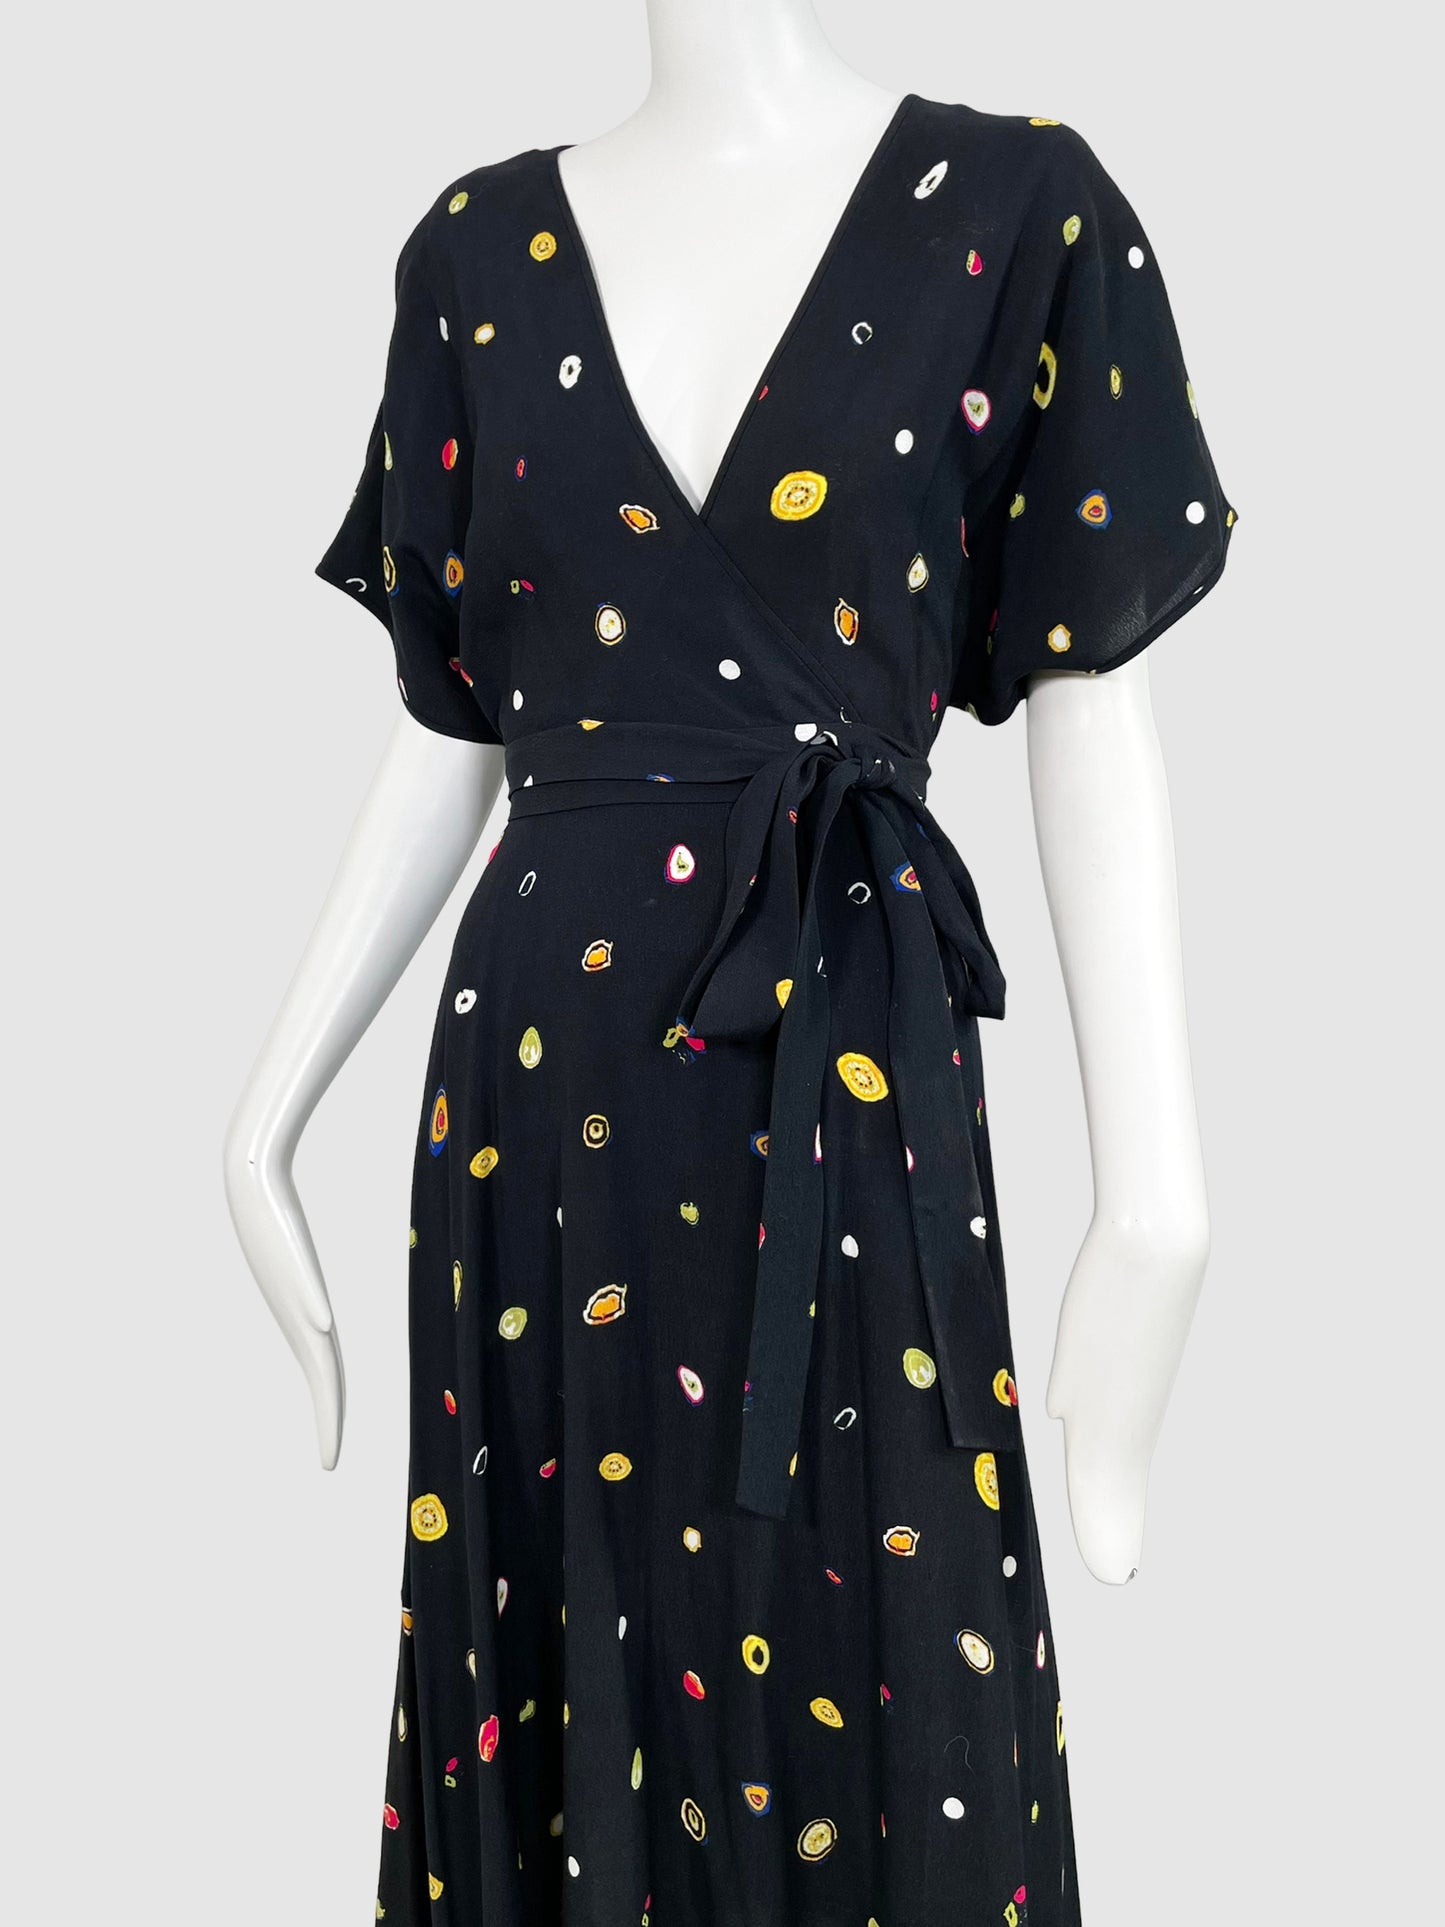 Diane Von Furstenberg Wrap Midi Dress - Size 4